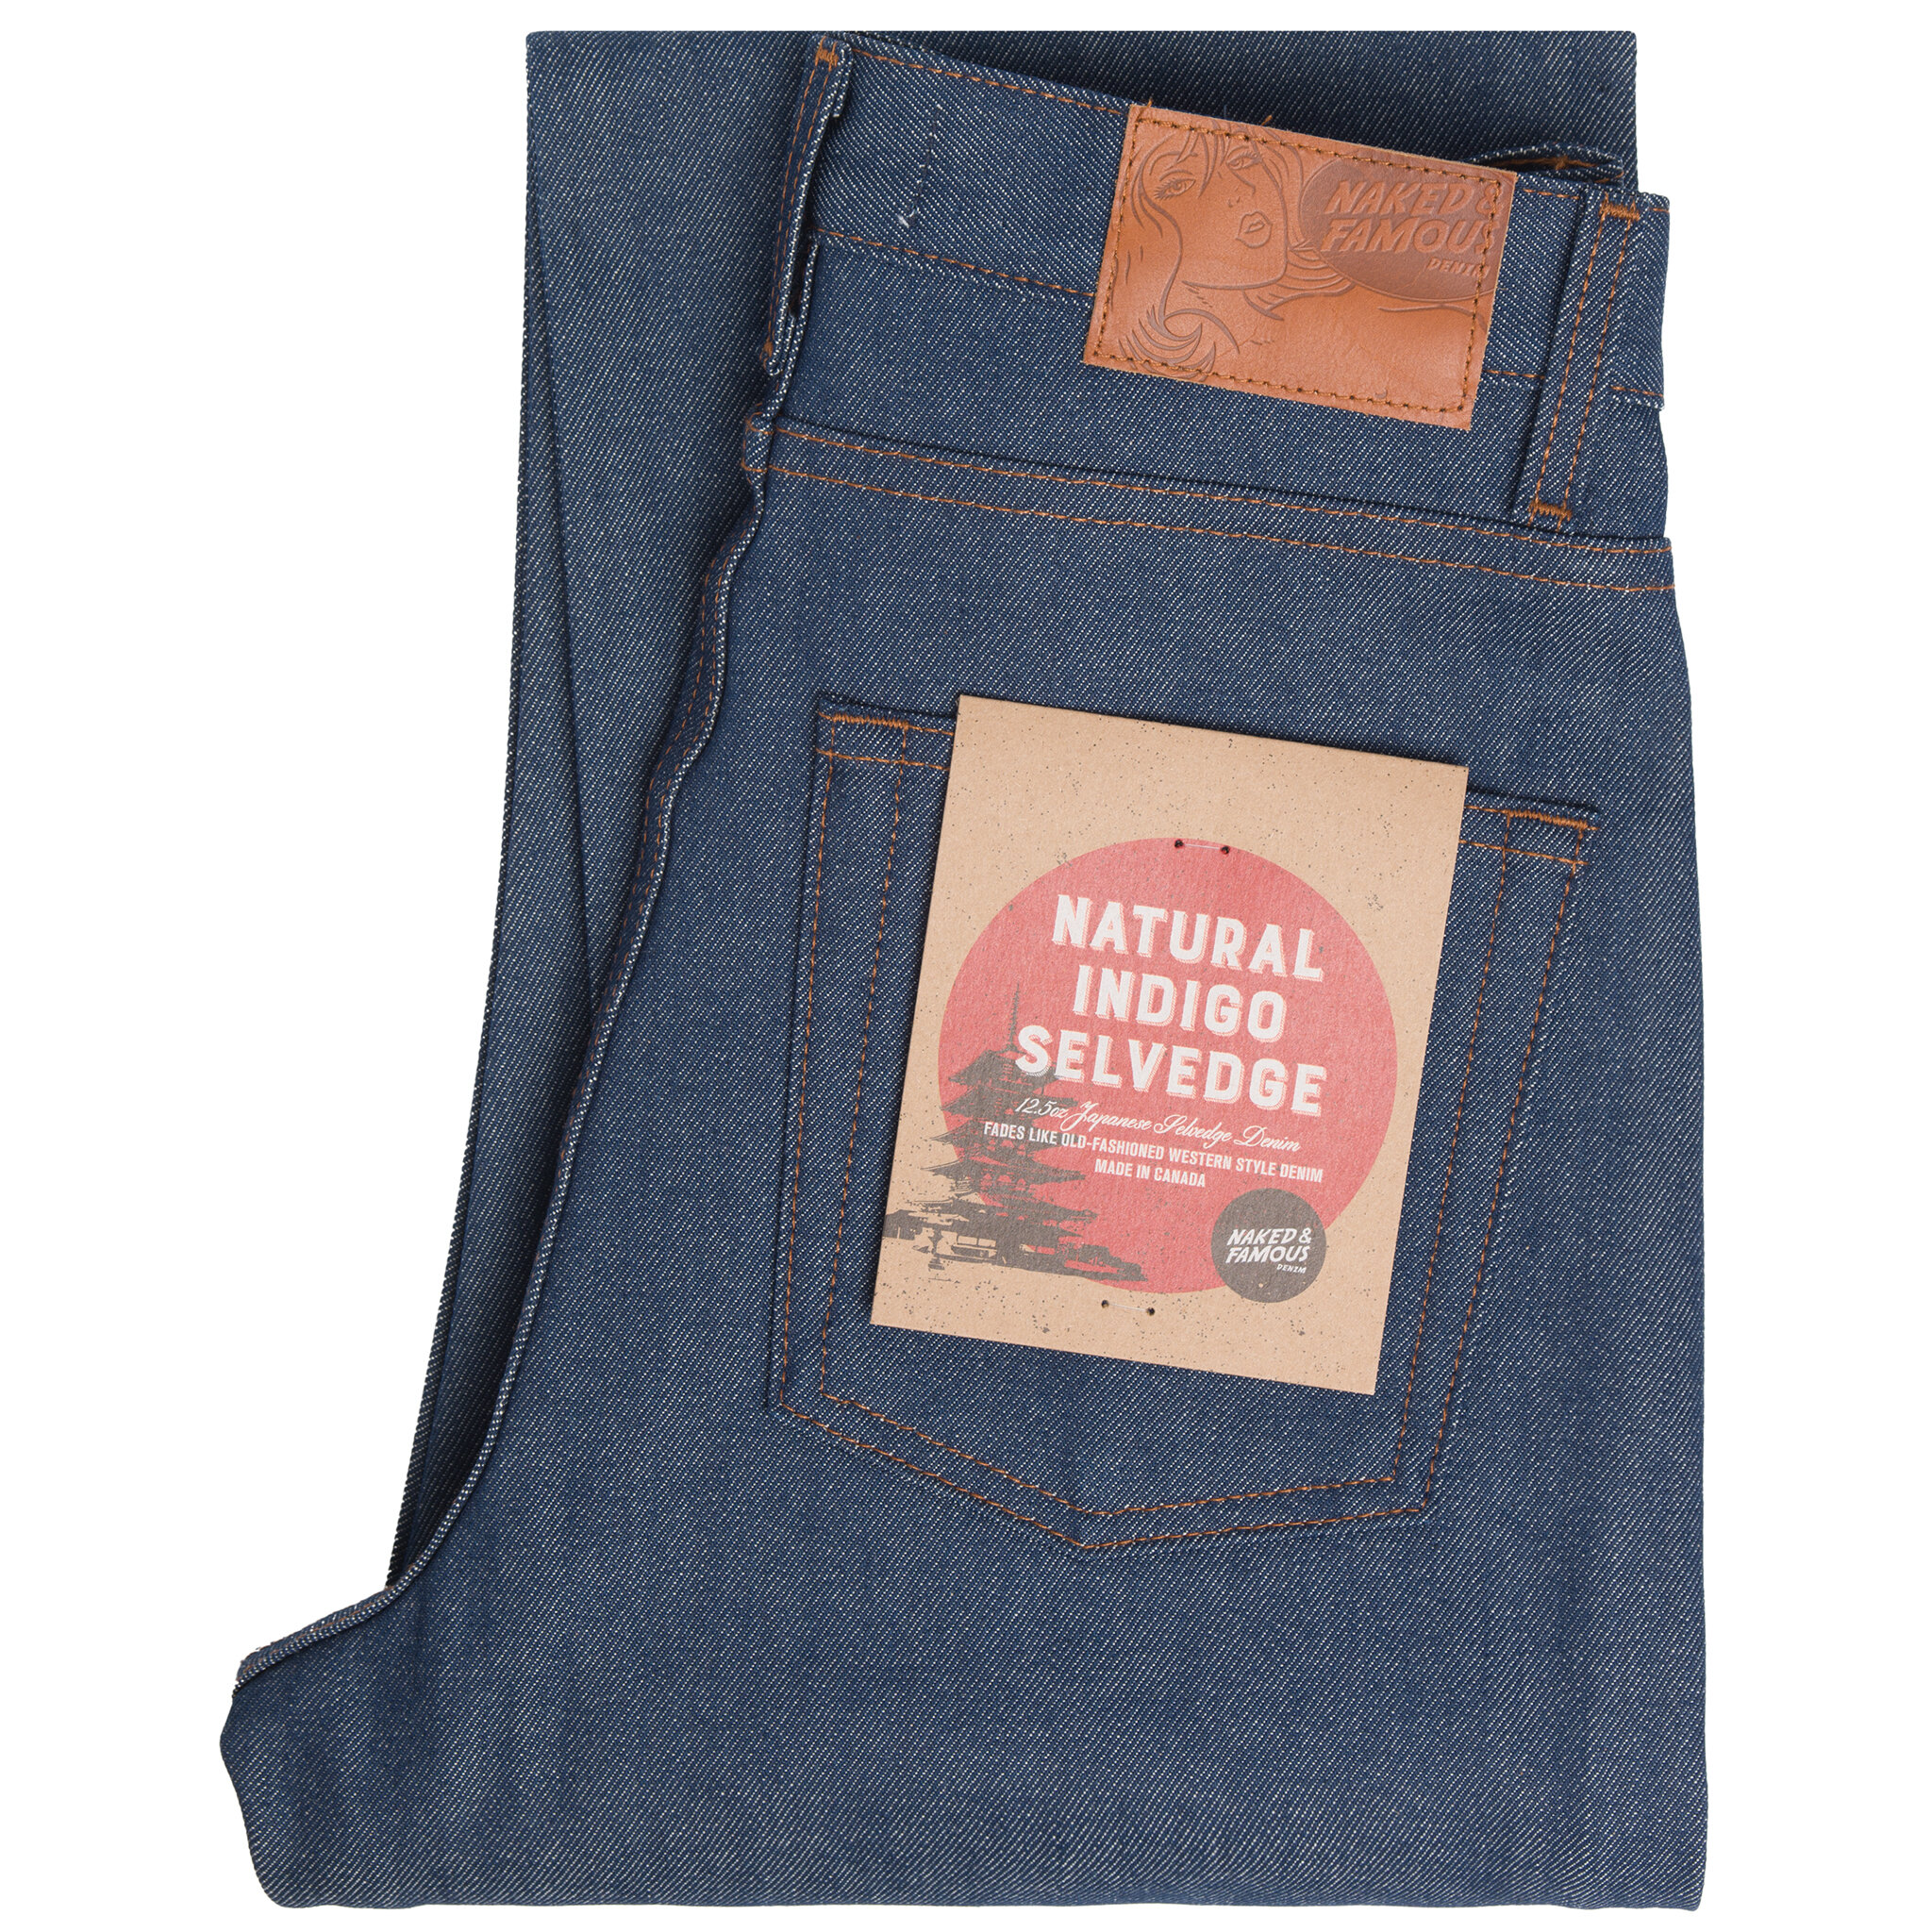  Women's Natural Indigo Selvedge jeans - folded 